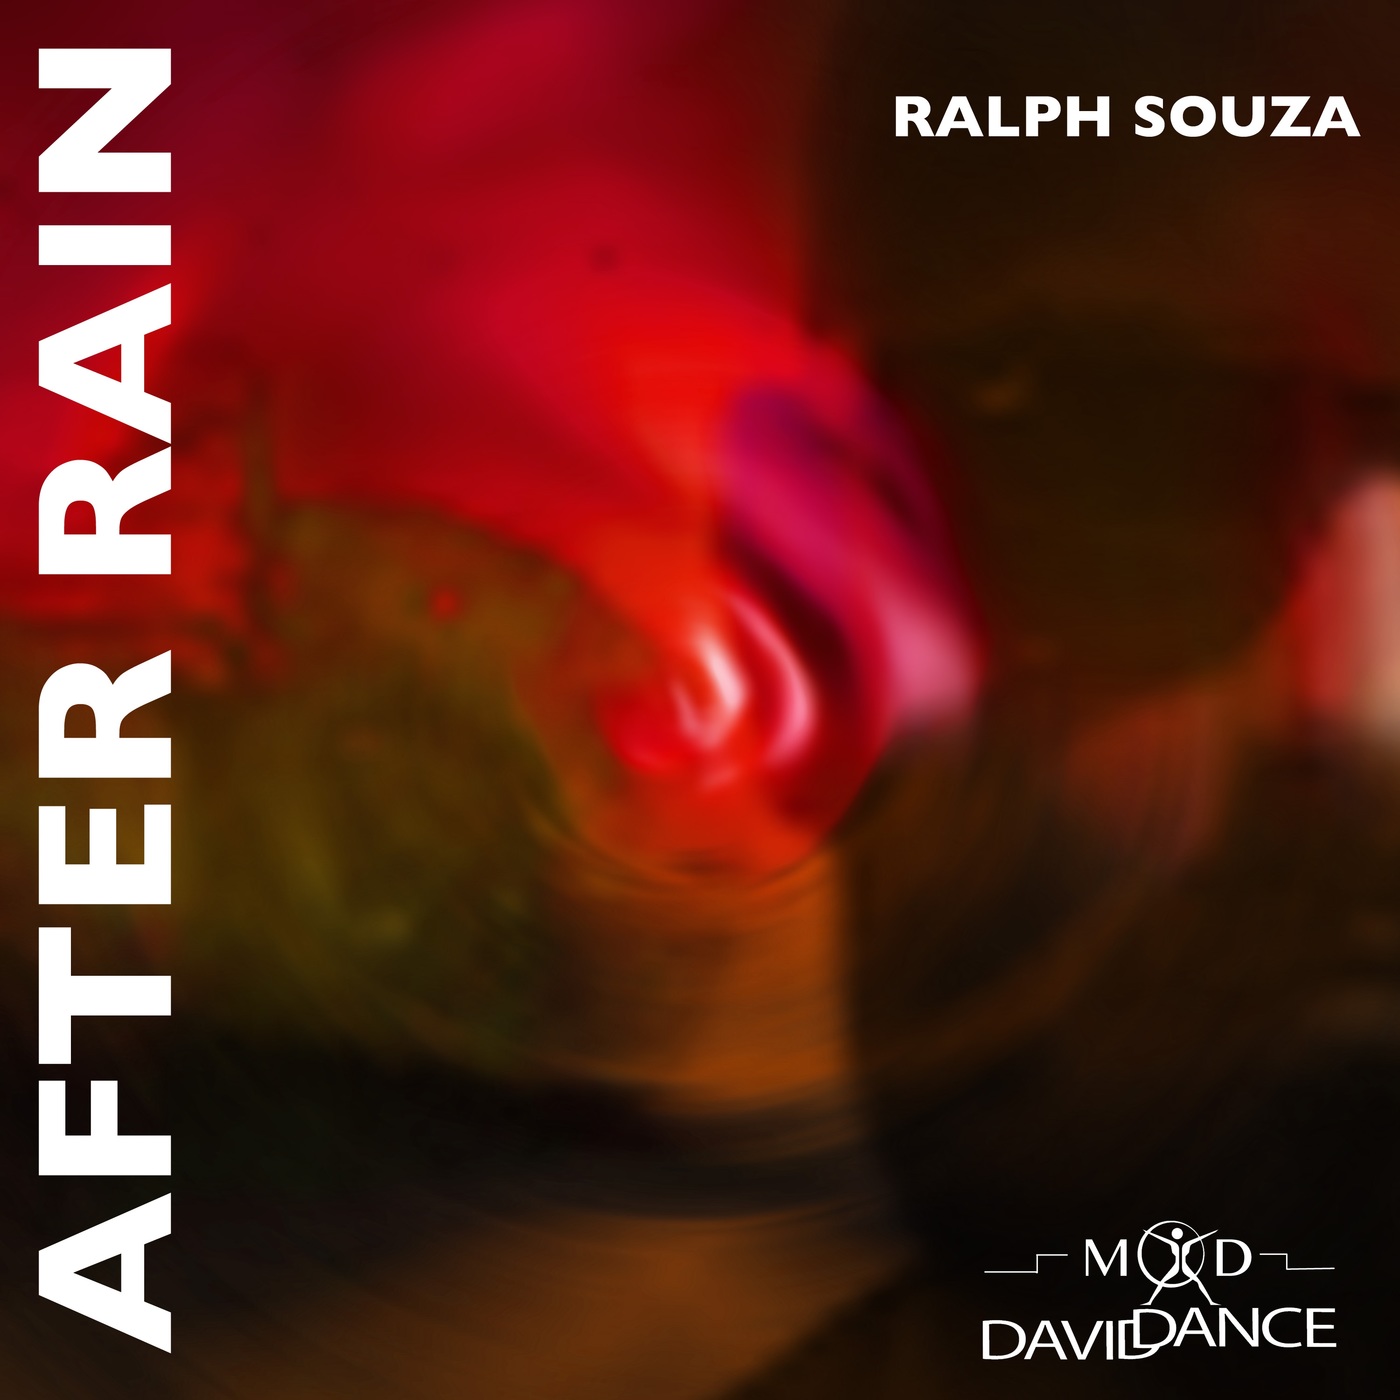 Ralph Souza - After Rain / Daviddance Mod